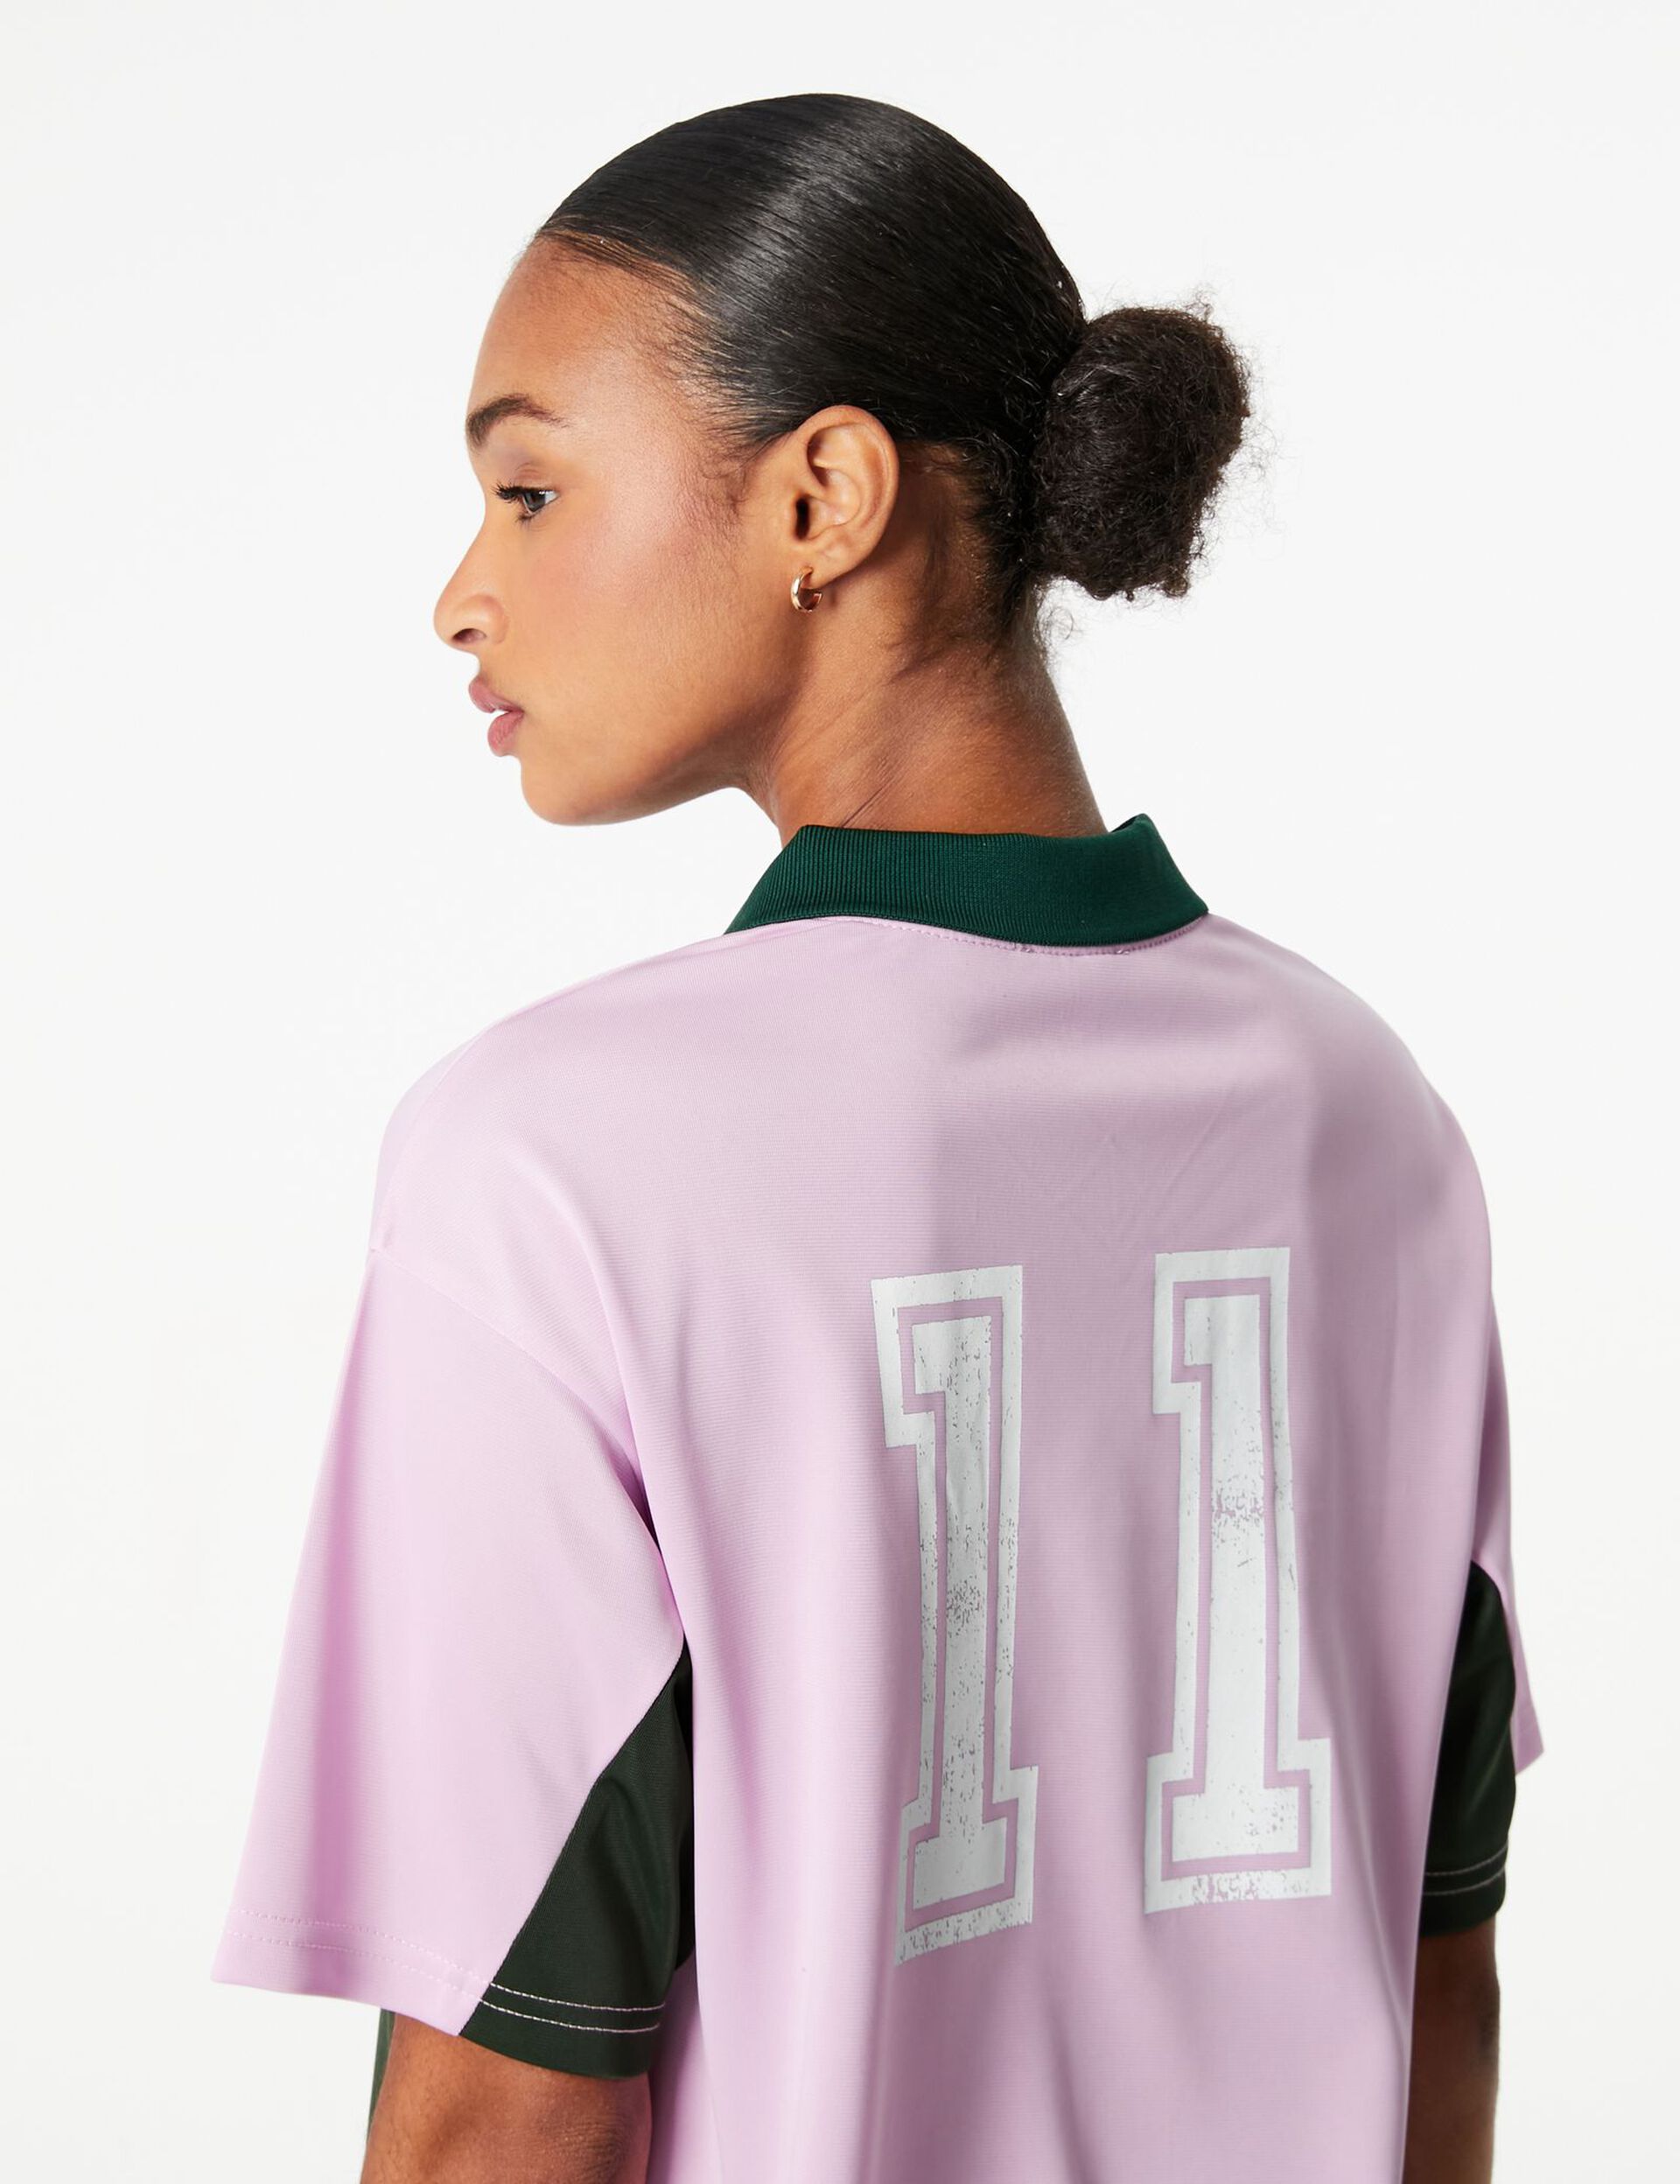 Tee-shirt Umbro esprit sport rose et vert